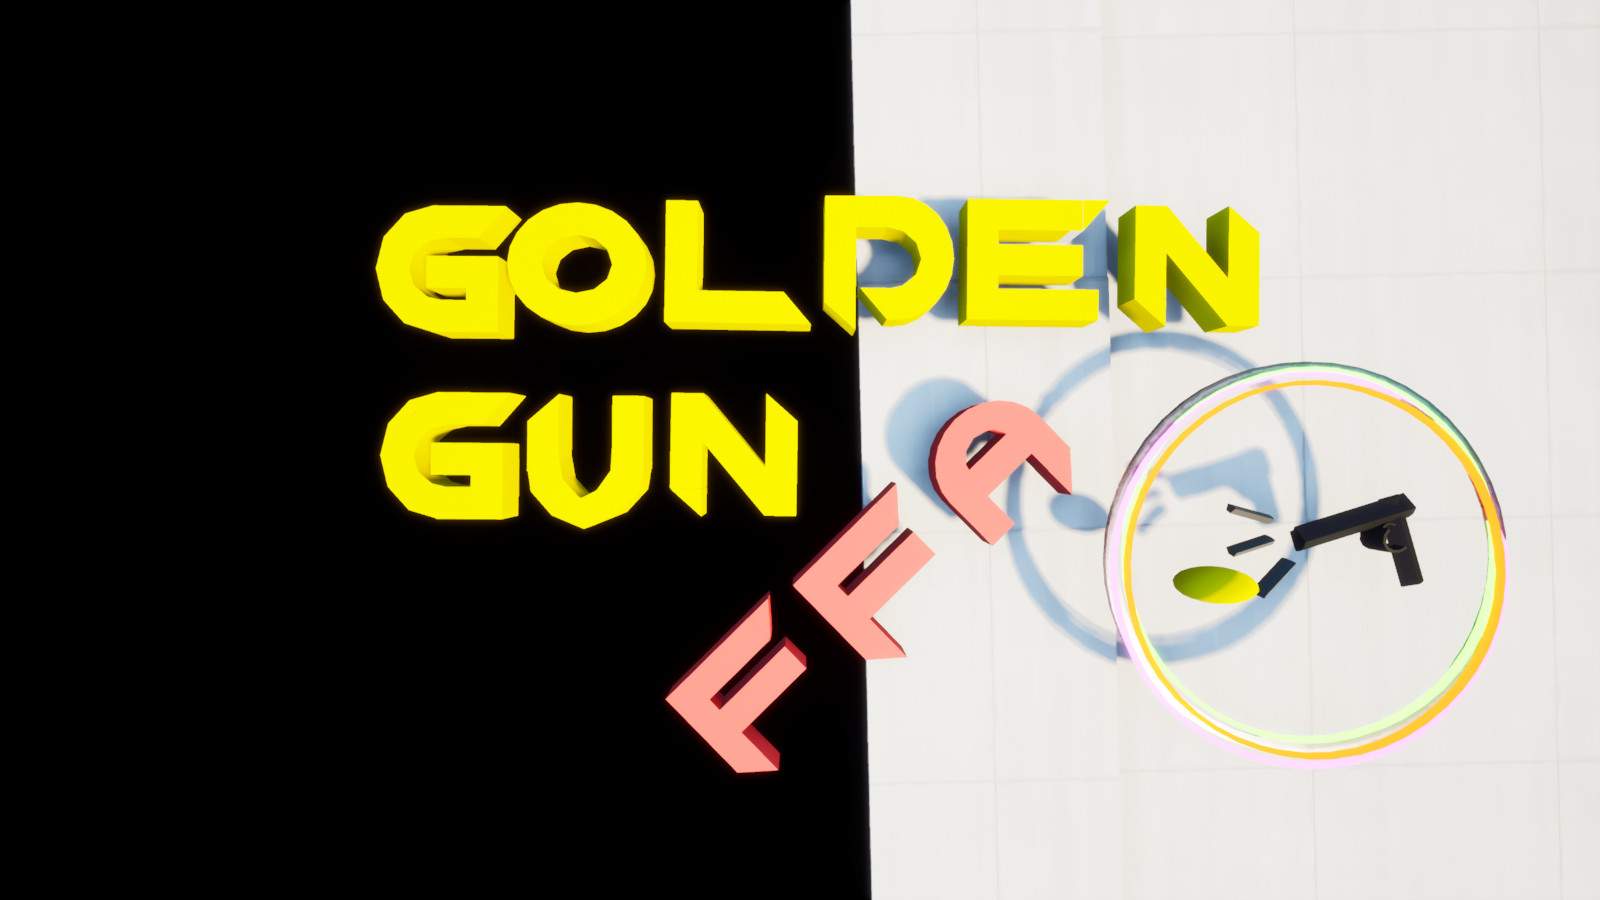 GOLDEN GUN FFA